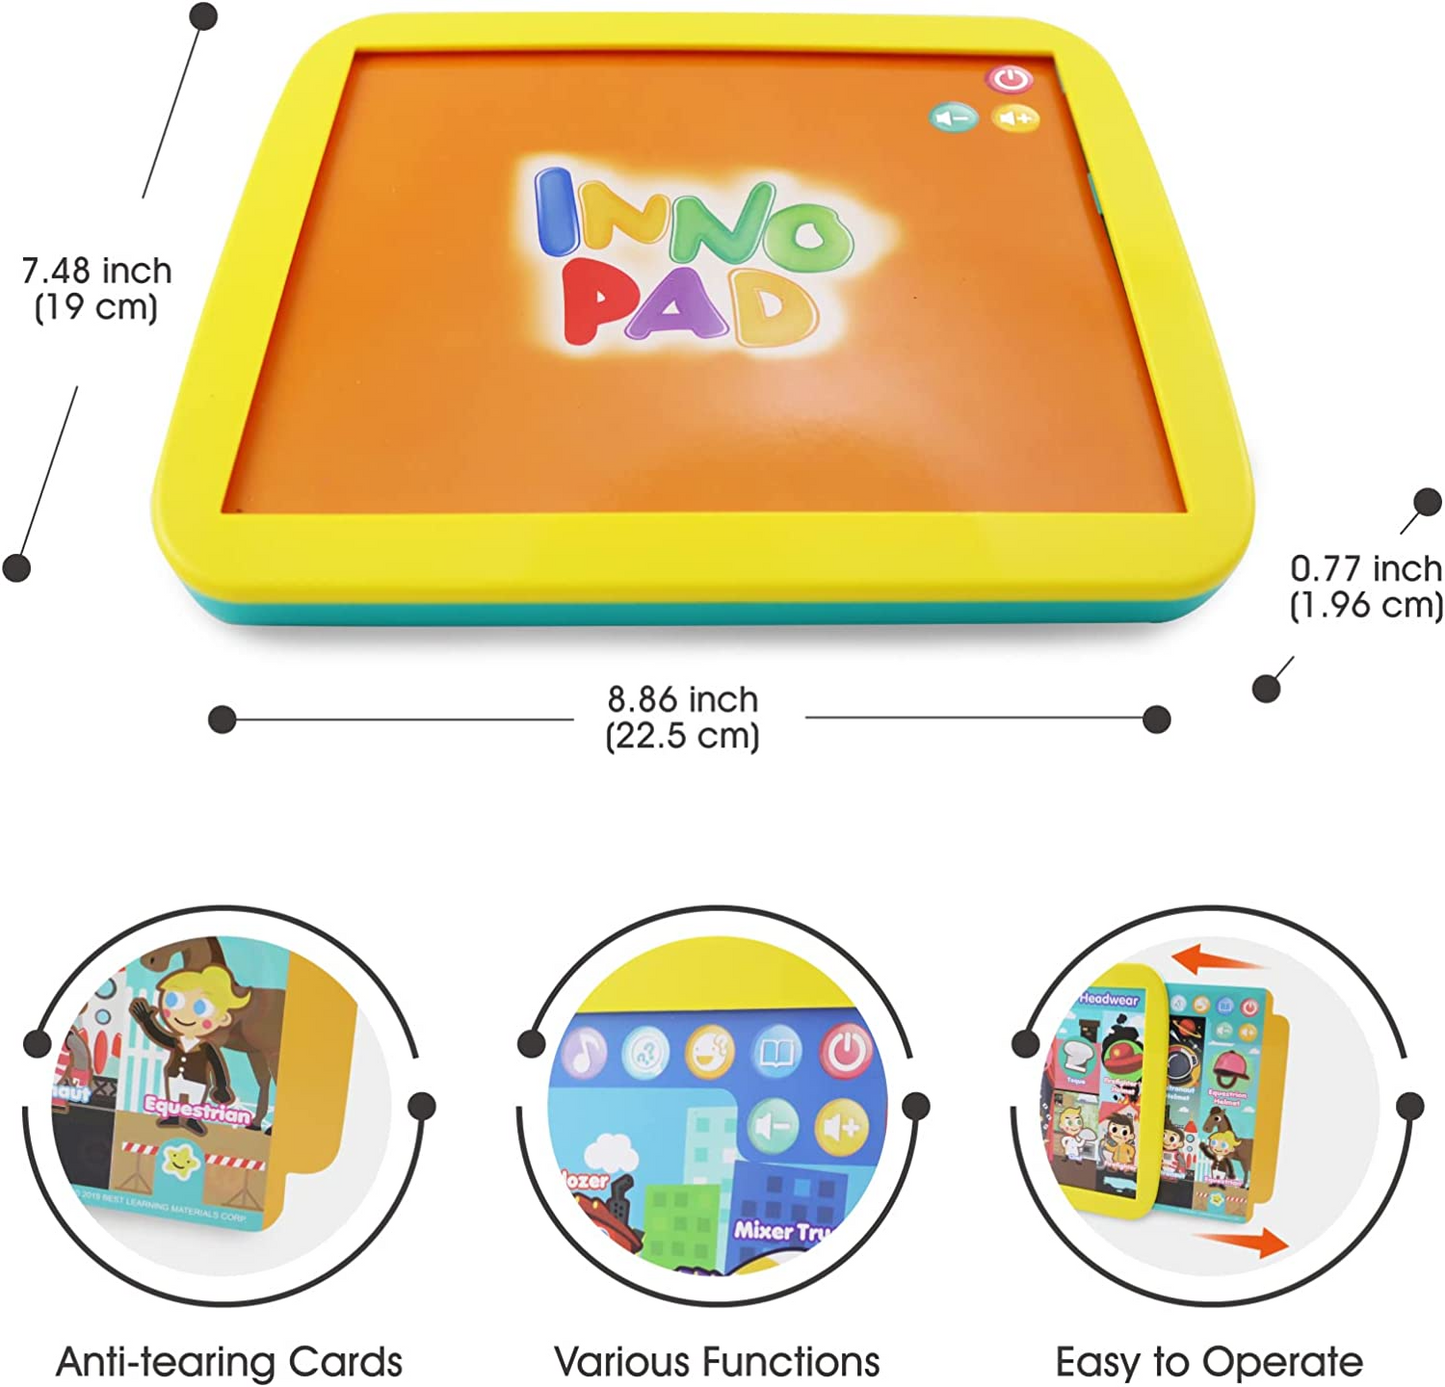 BEST LEARNING INNO PAD Smart Fun Lessons - Tablet Toy educacional para aprender alfabeto, números, cores, formas, animais, tempo para crianças de 2 a 5 anos